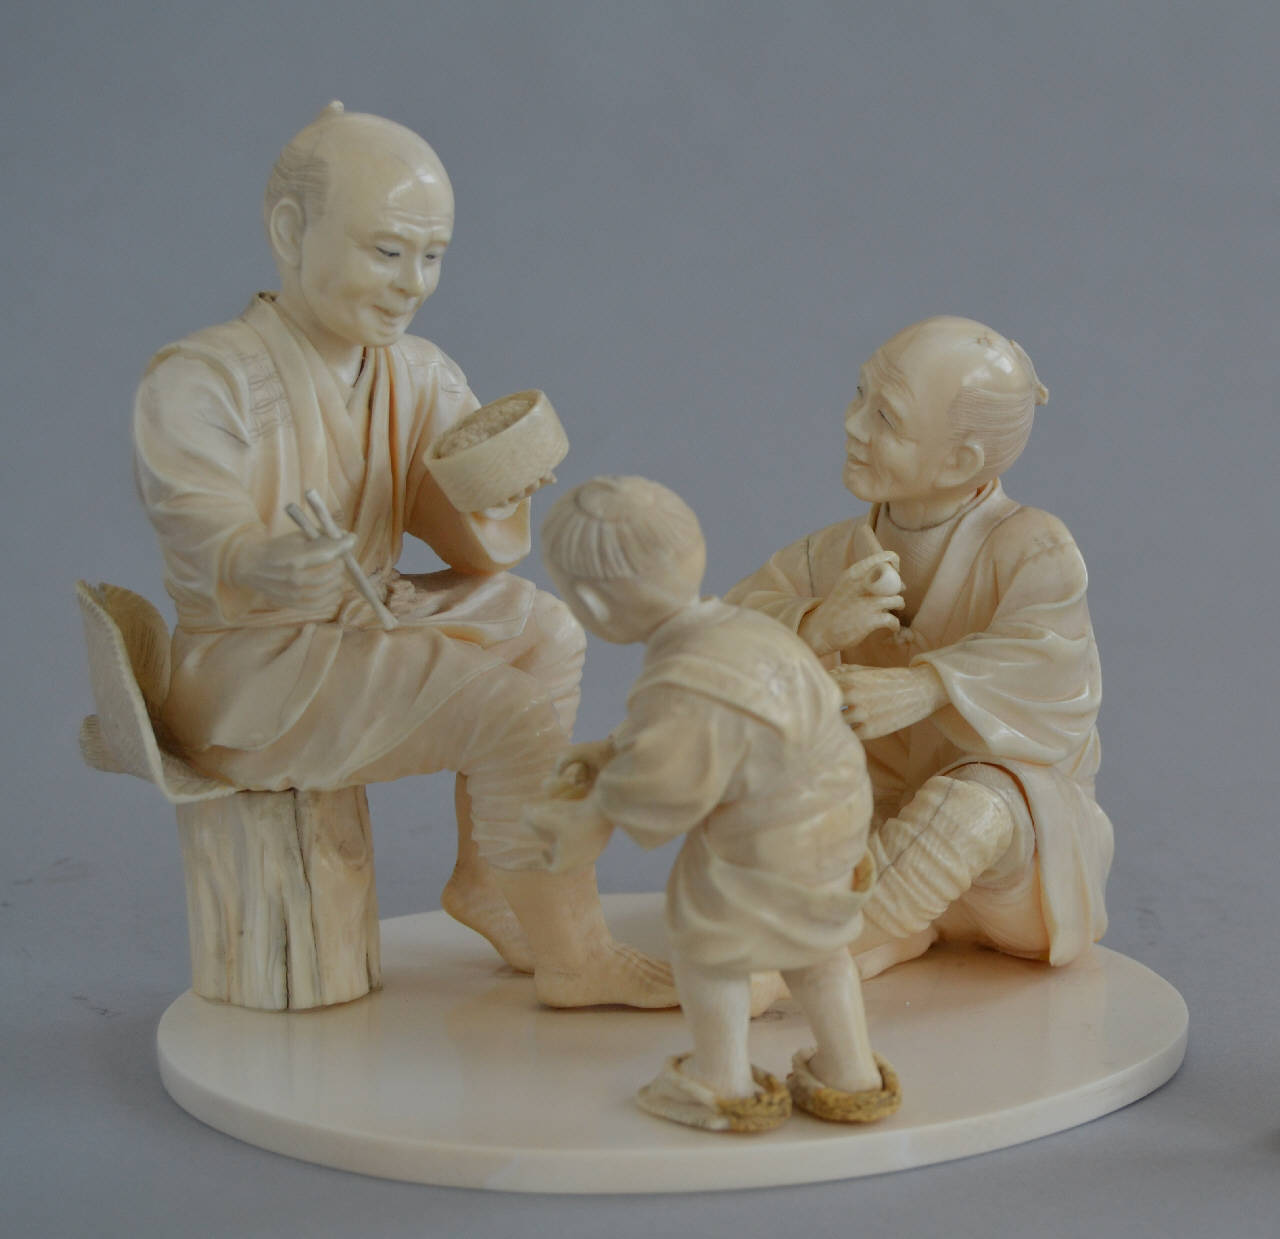 Due uomini e un bambino (gruppo scultoreo) - manifattura giapponese (fine/inizio secc. XIX/ XX)